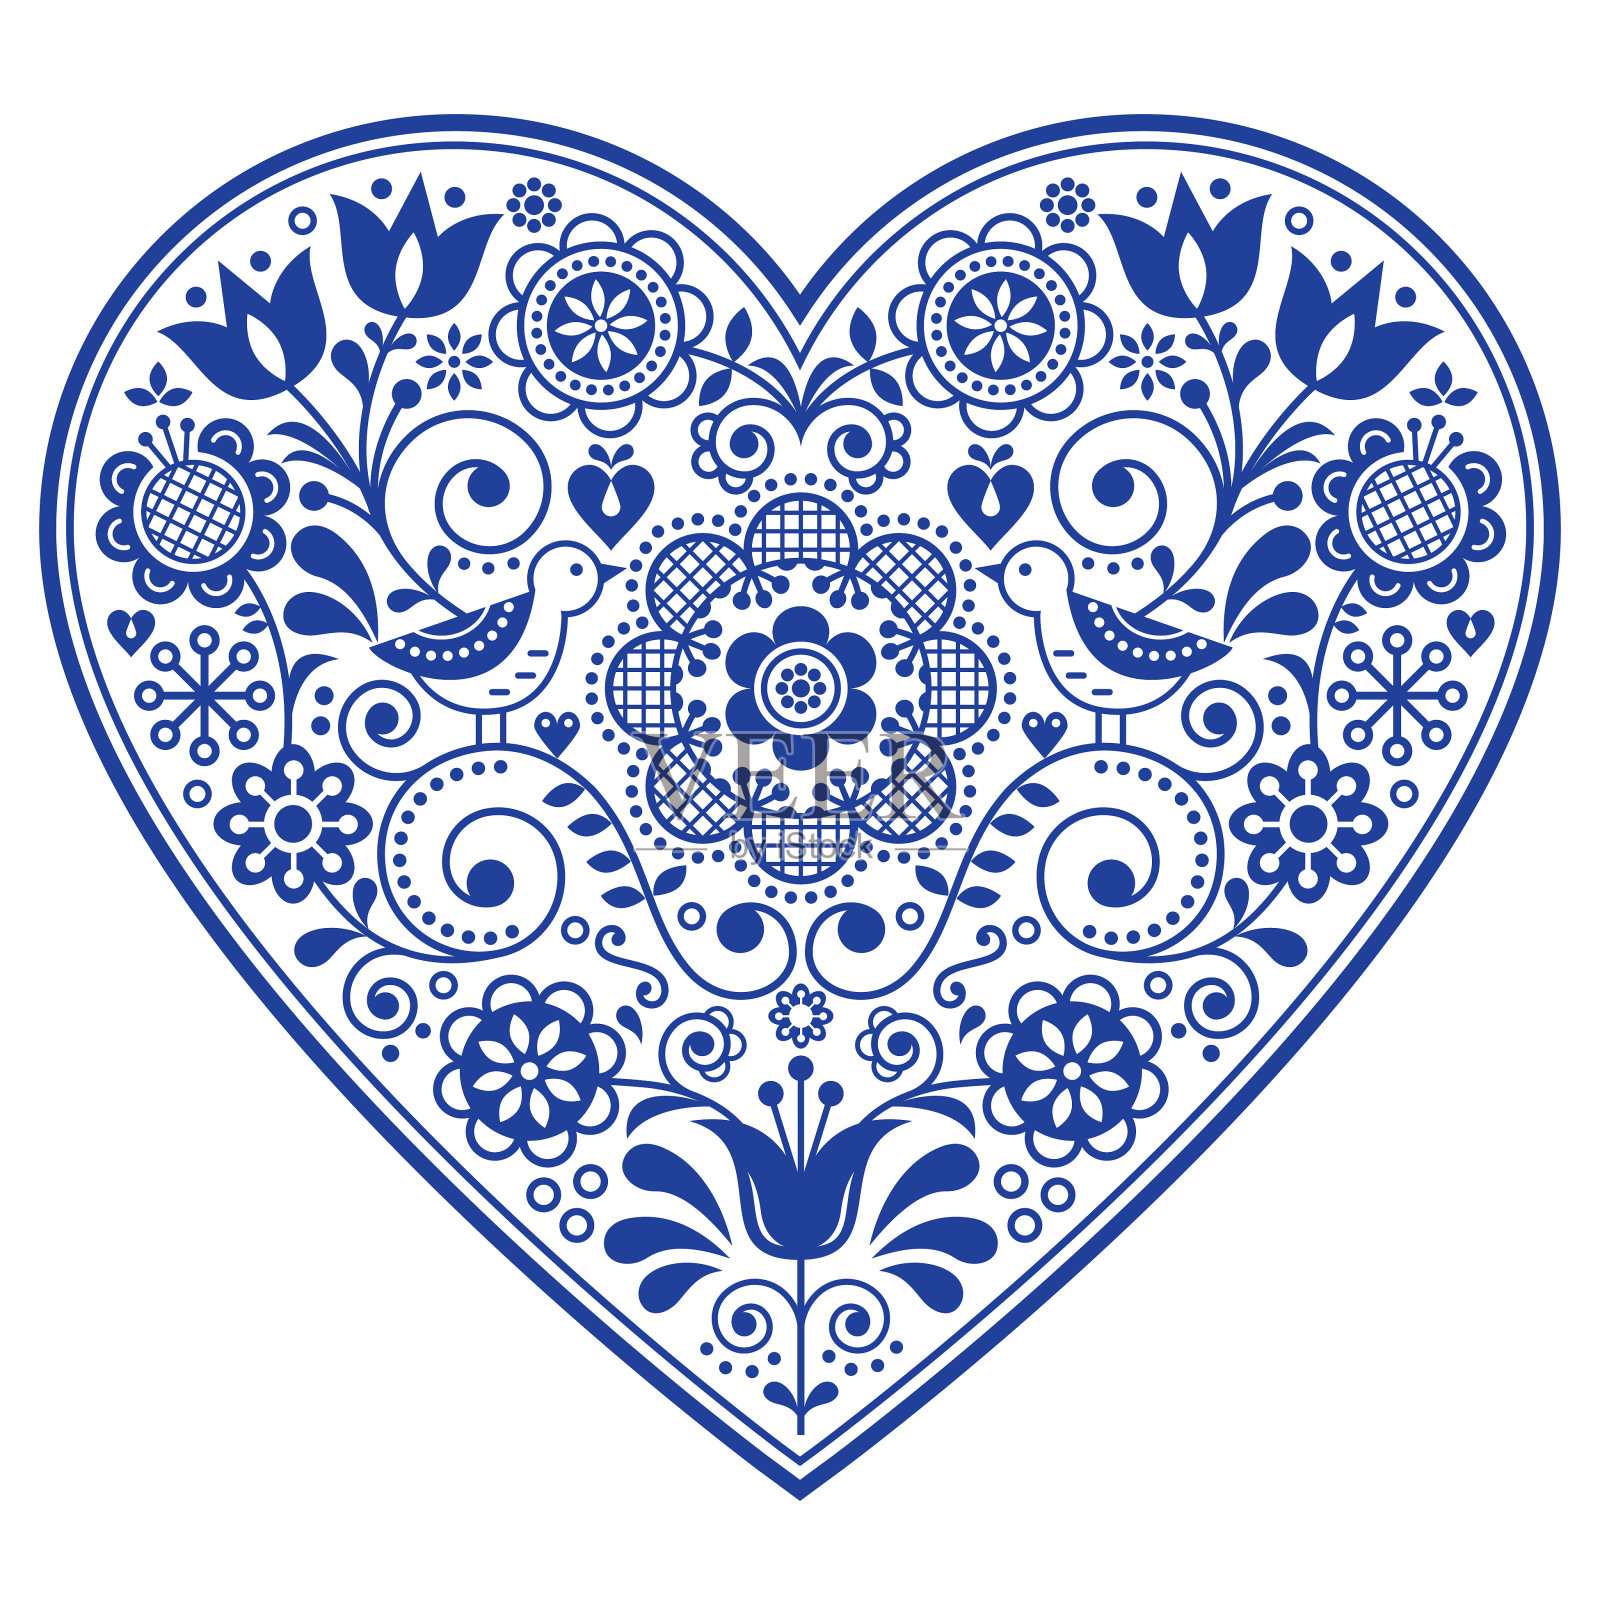 斯堪的纳维亚民间心形矢量设计，情人节，生日或婚礼贺卡，海军蓝花卉图案插画图片素材